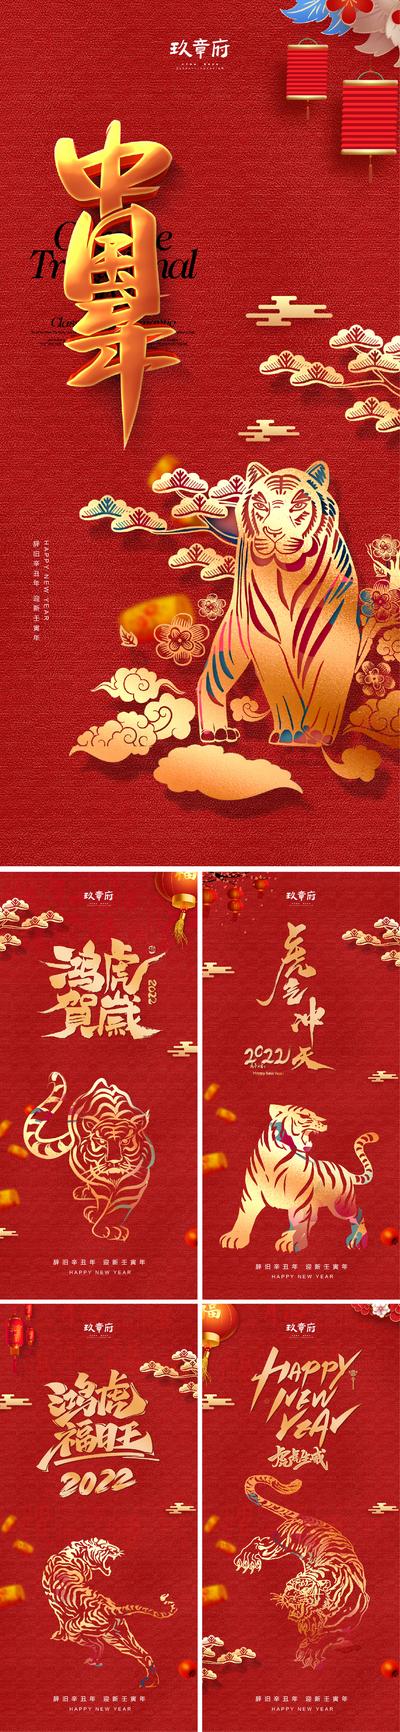 南门网 海报  公历节日 元旦 2022 老虎 虎年 新年  剪影 红金  